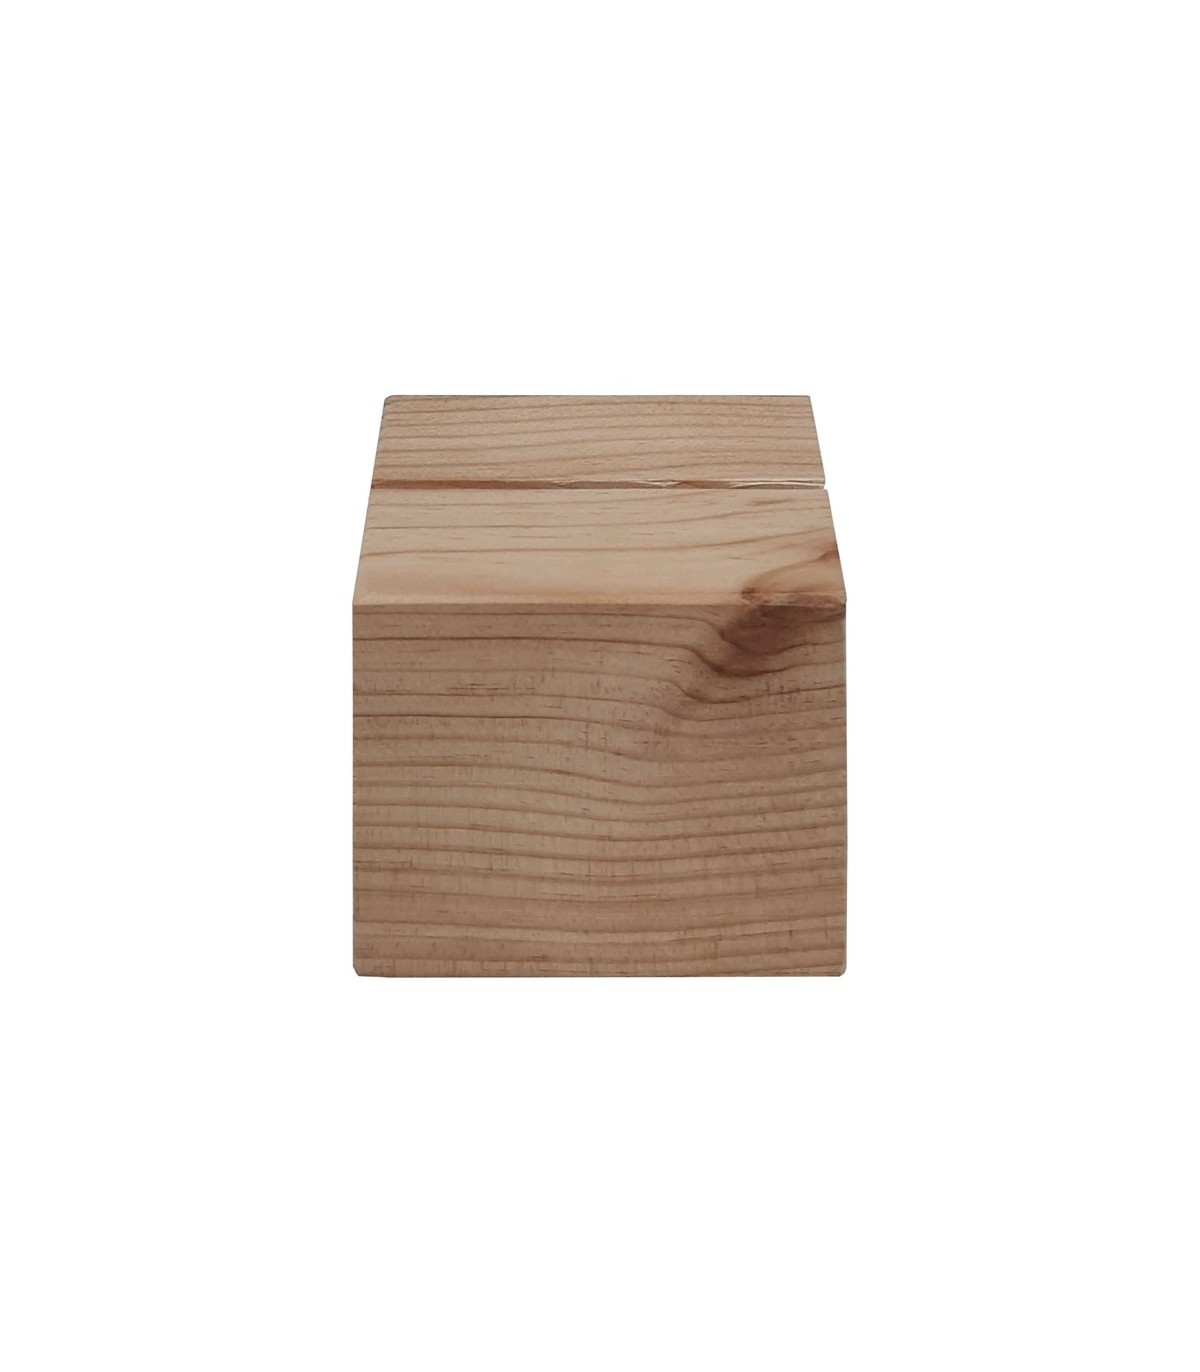 Bloc en bois massif - 20 x 20 x 20 cm - Lot de 3 supports en bois 